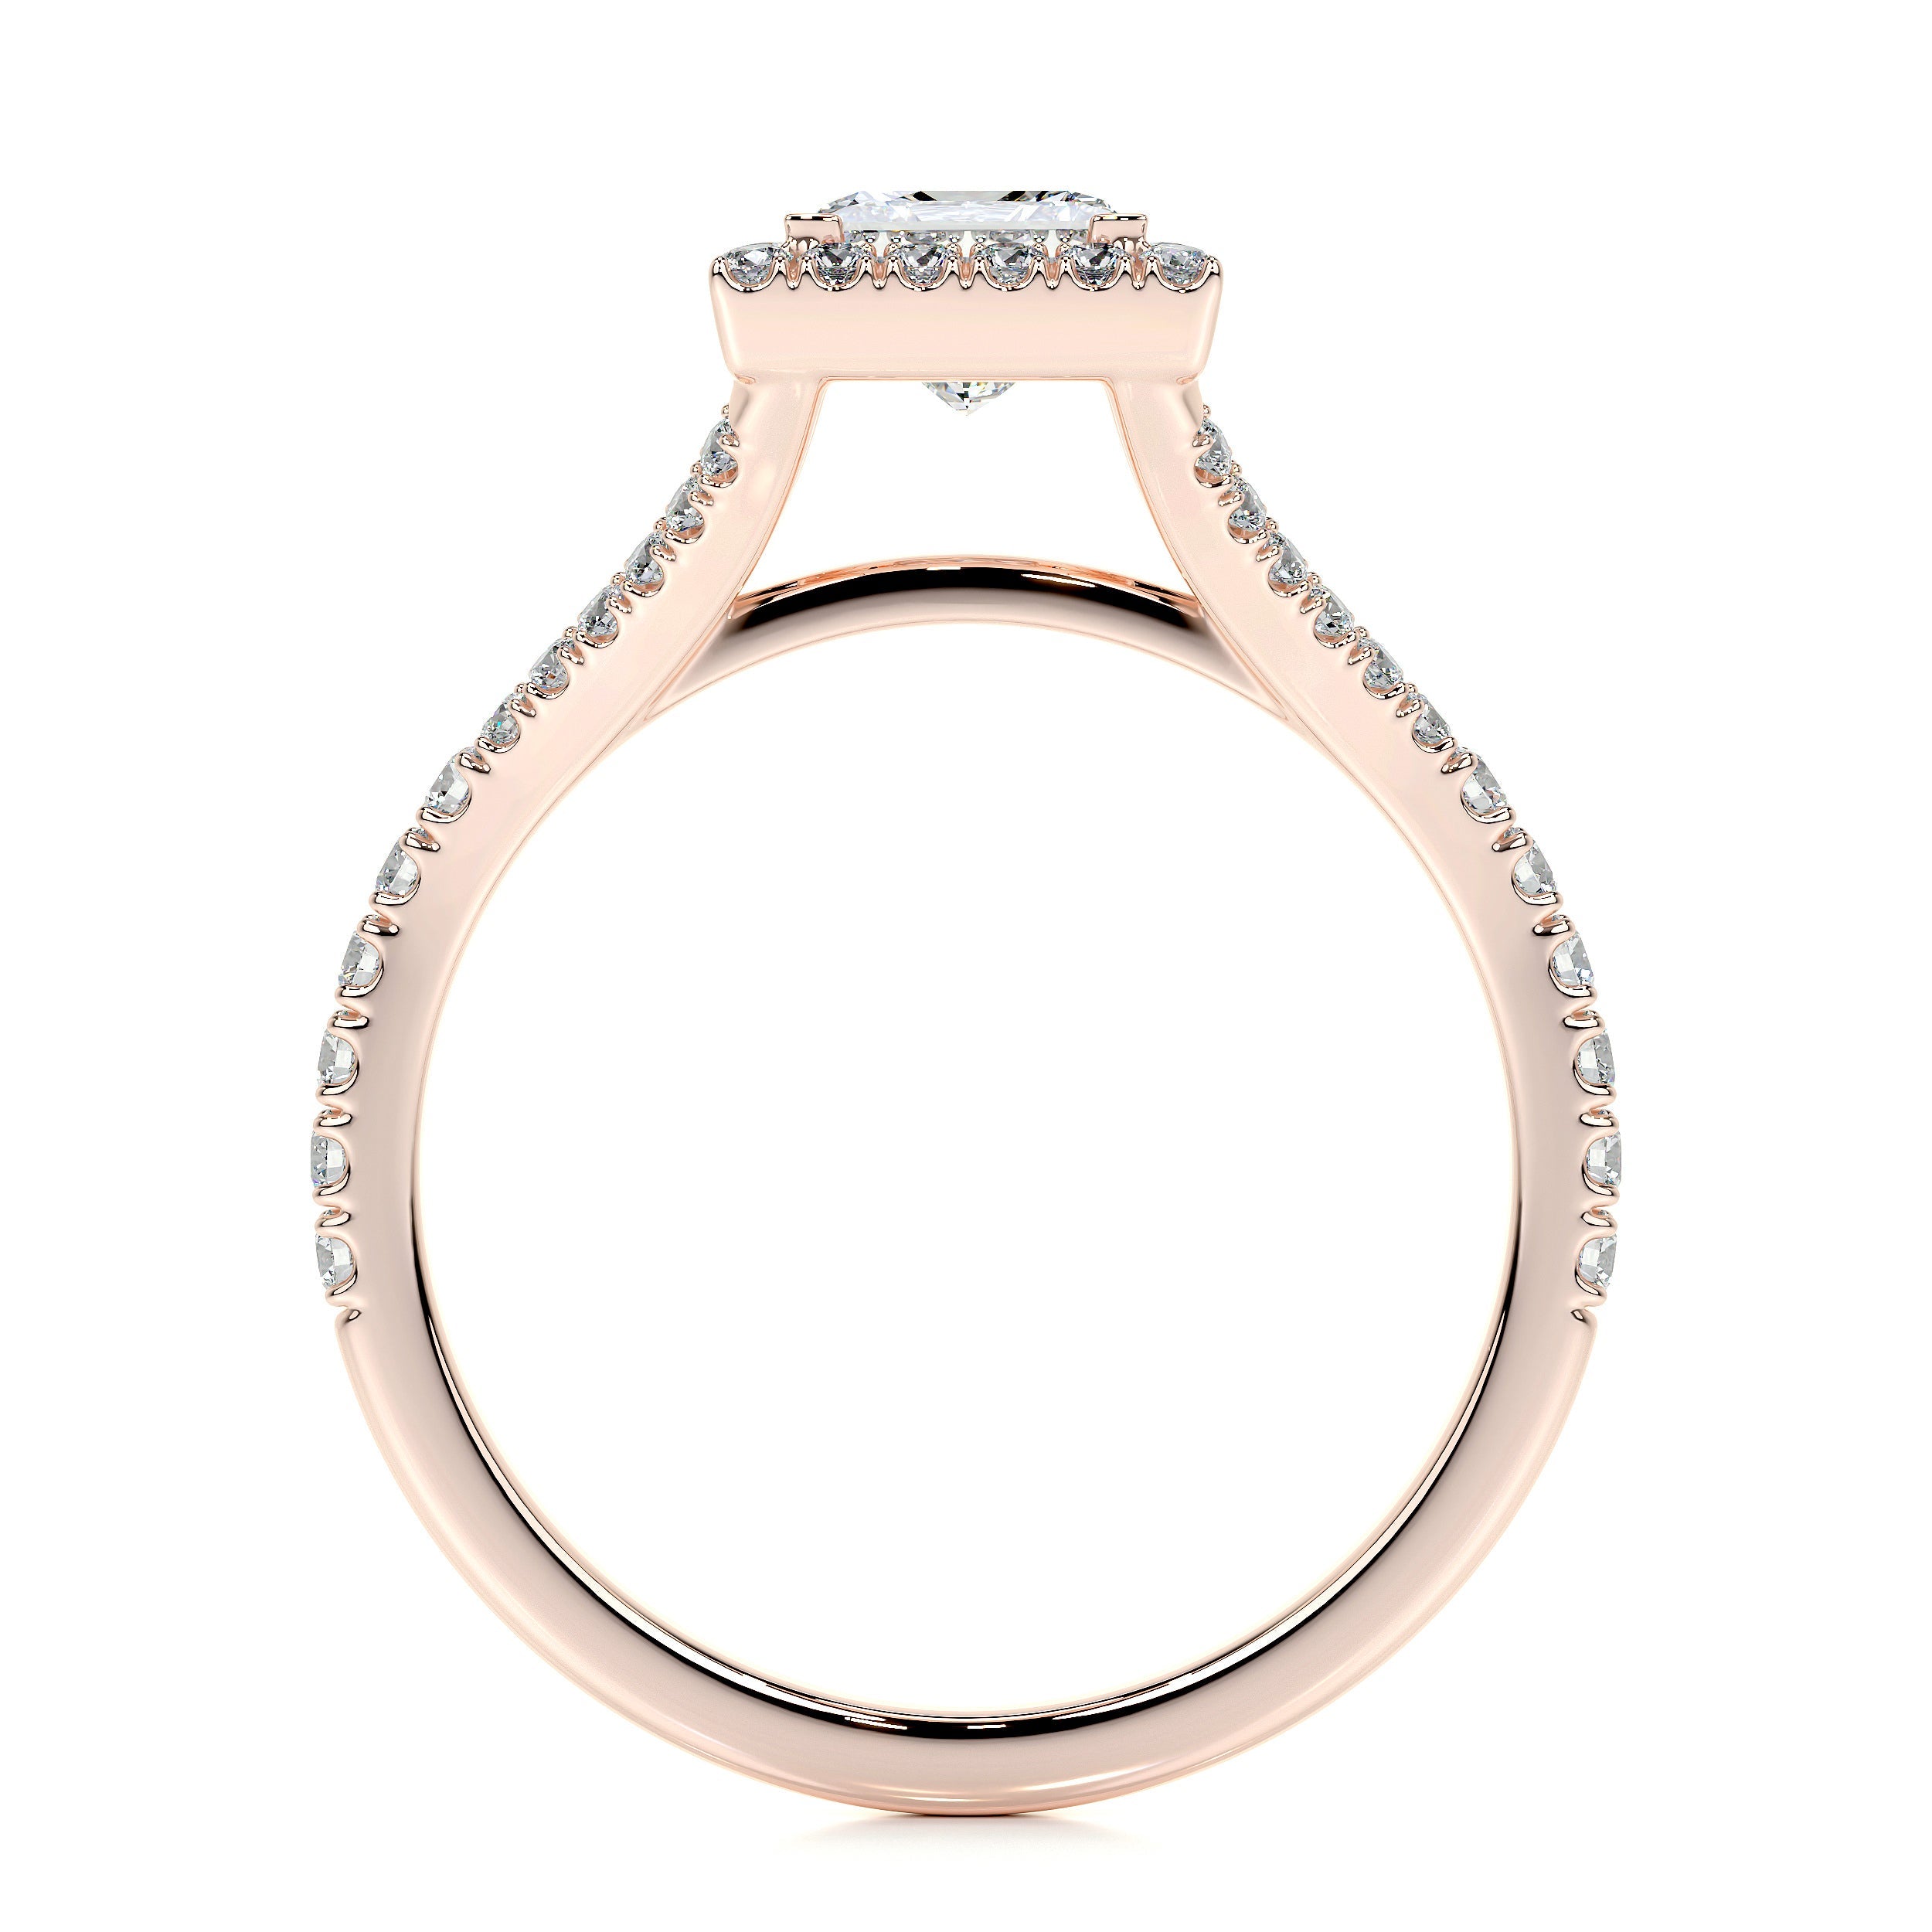 Celia Lab Grown Diamond Ring   (1.25 Carat) -14K Rose Gold